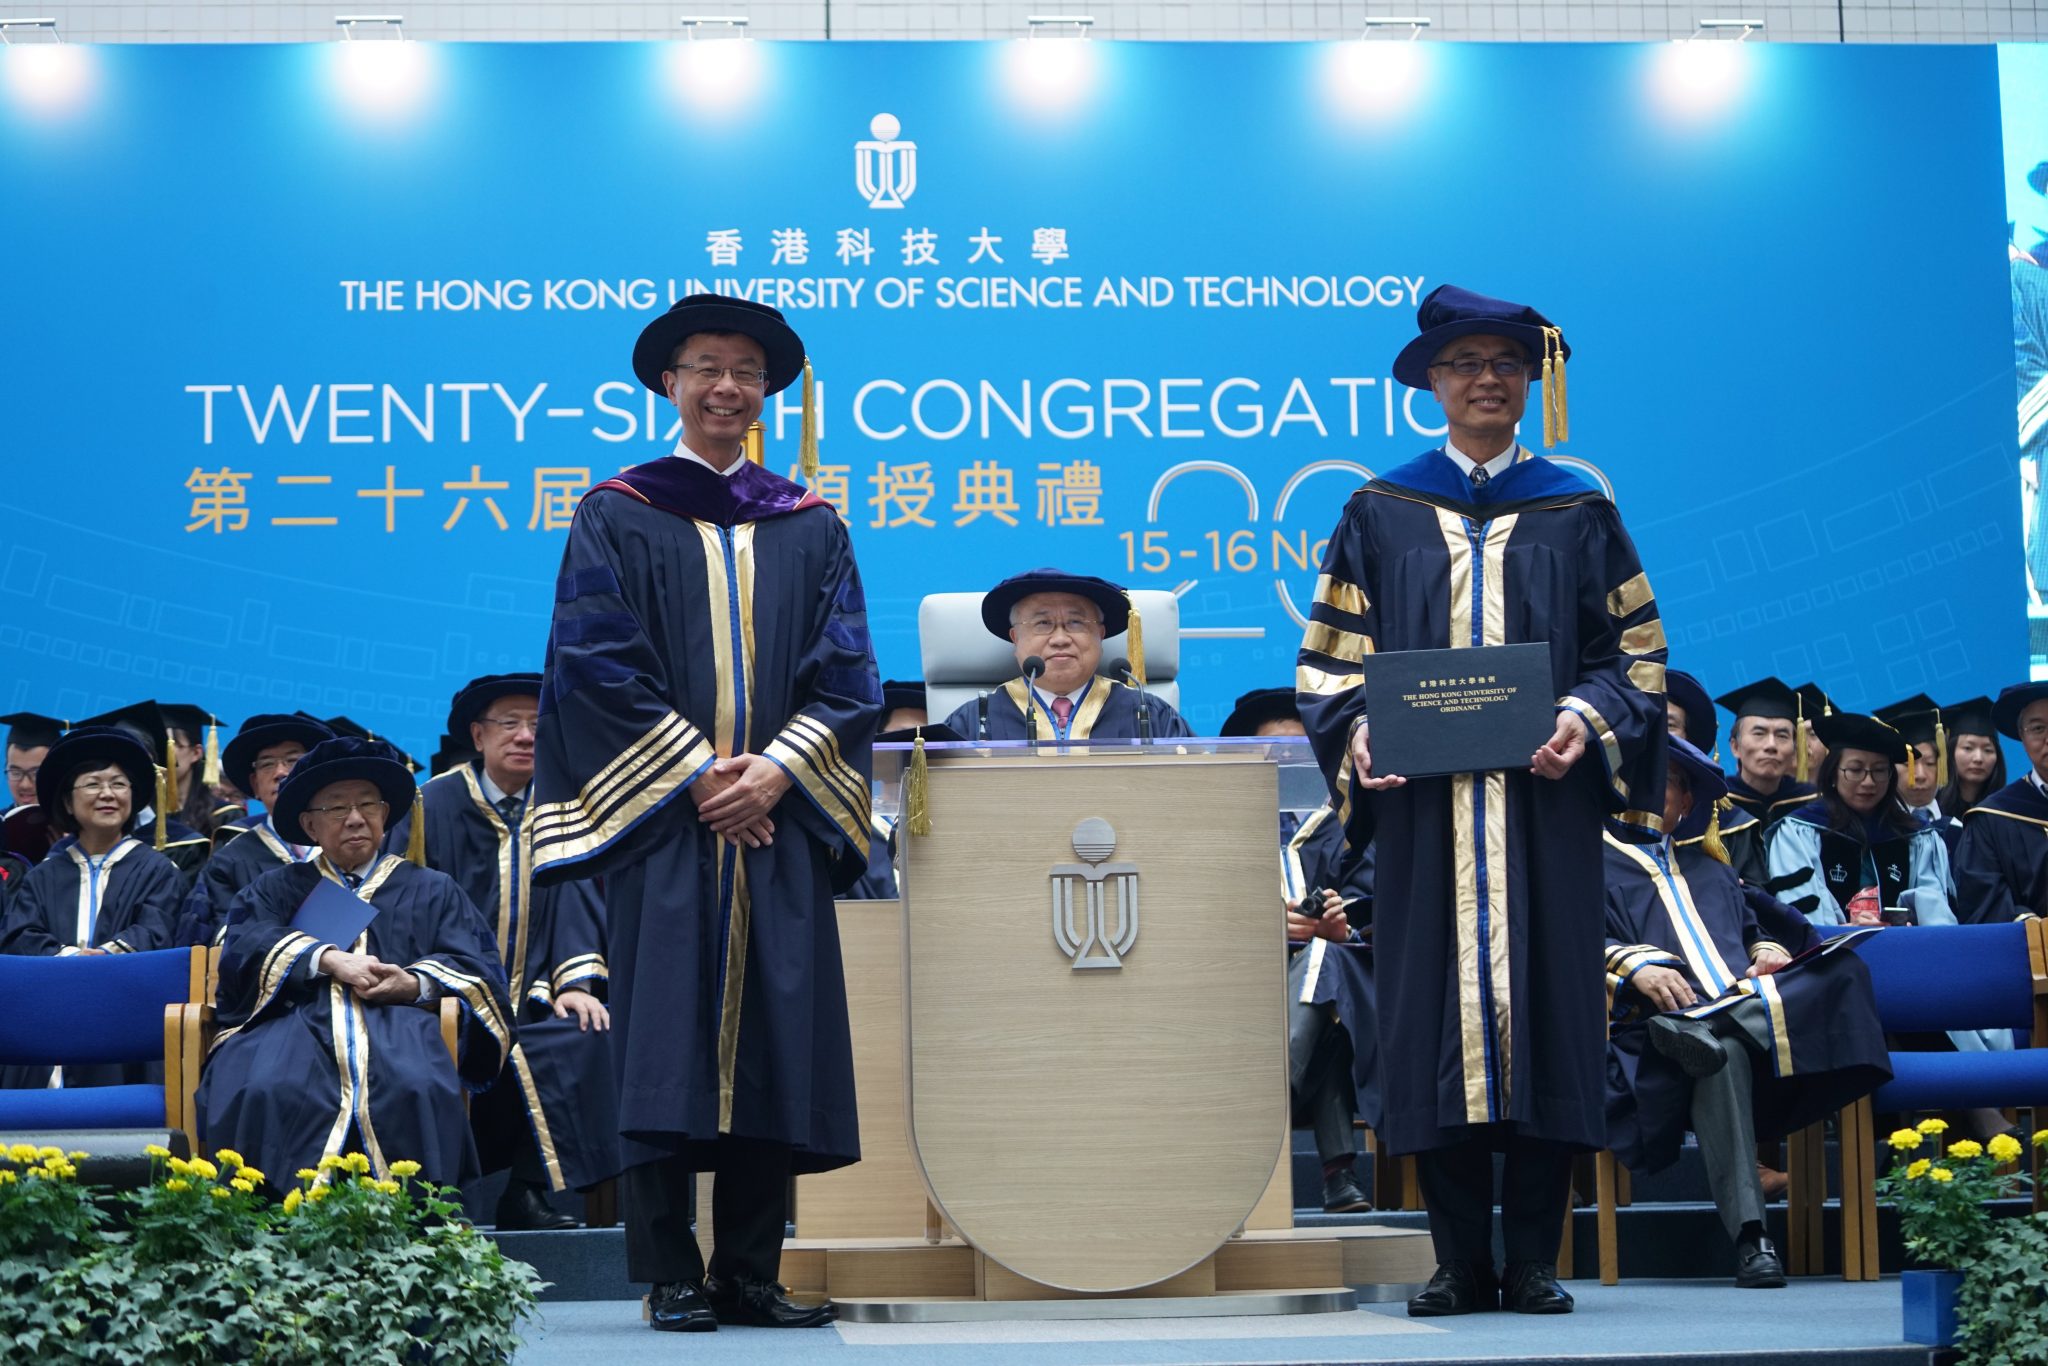 香港科技大學新任校長就職典禮暨第二十六屆學位頒授典禮頒授榮譽博士予三位傑出學者及社會領袖| 香港科技大學